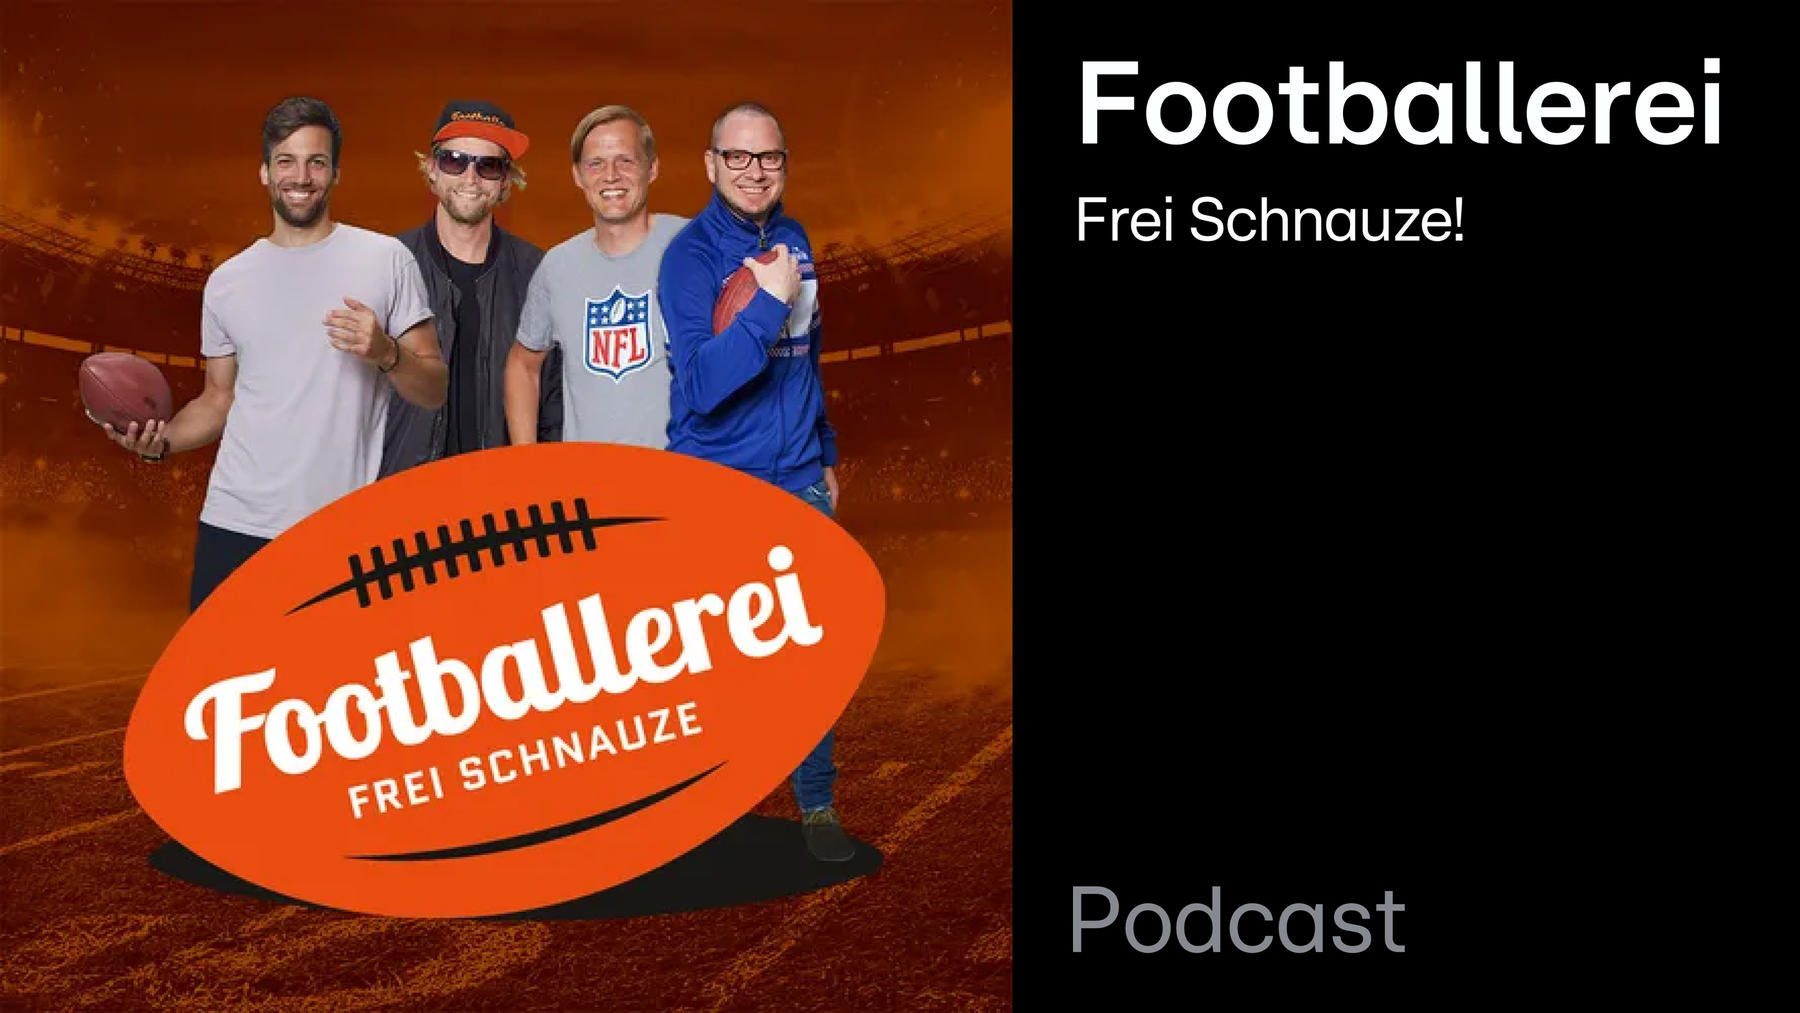 Podcast: Footballerei – Frei Schnauze!